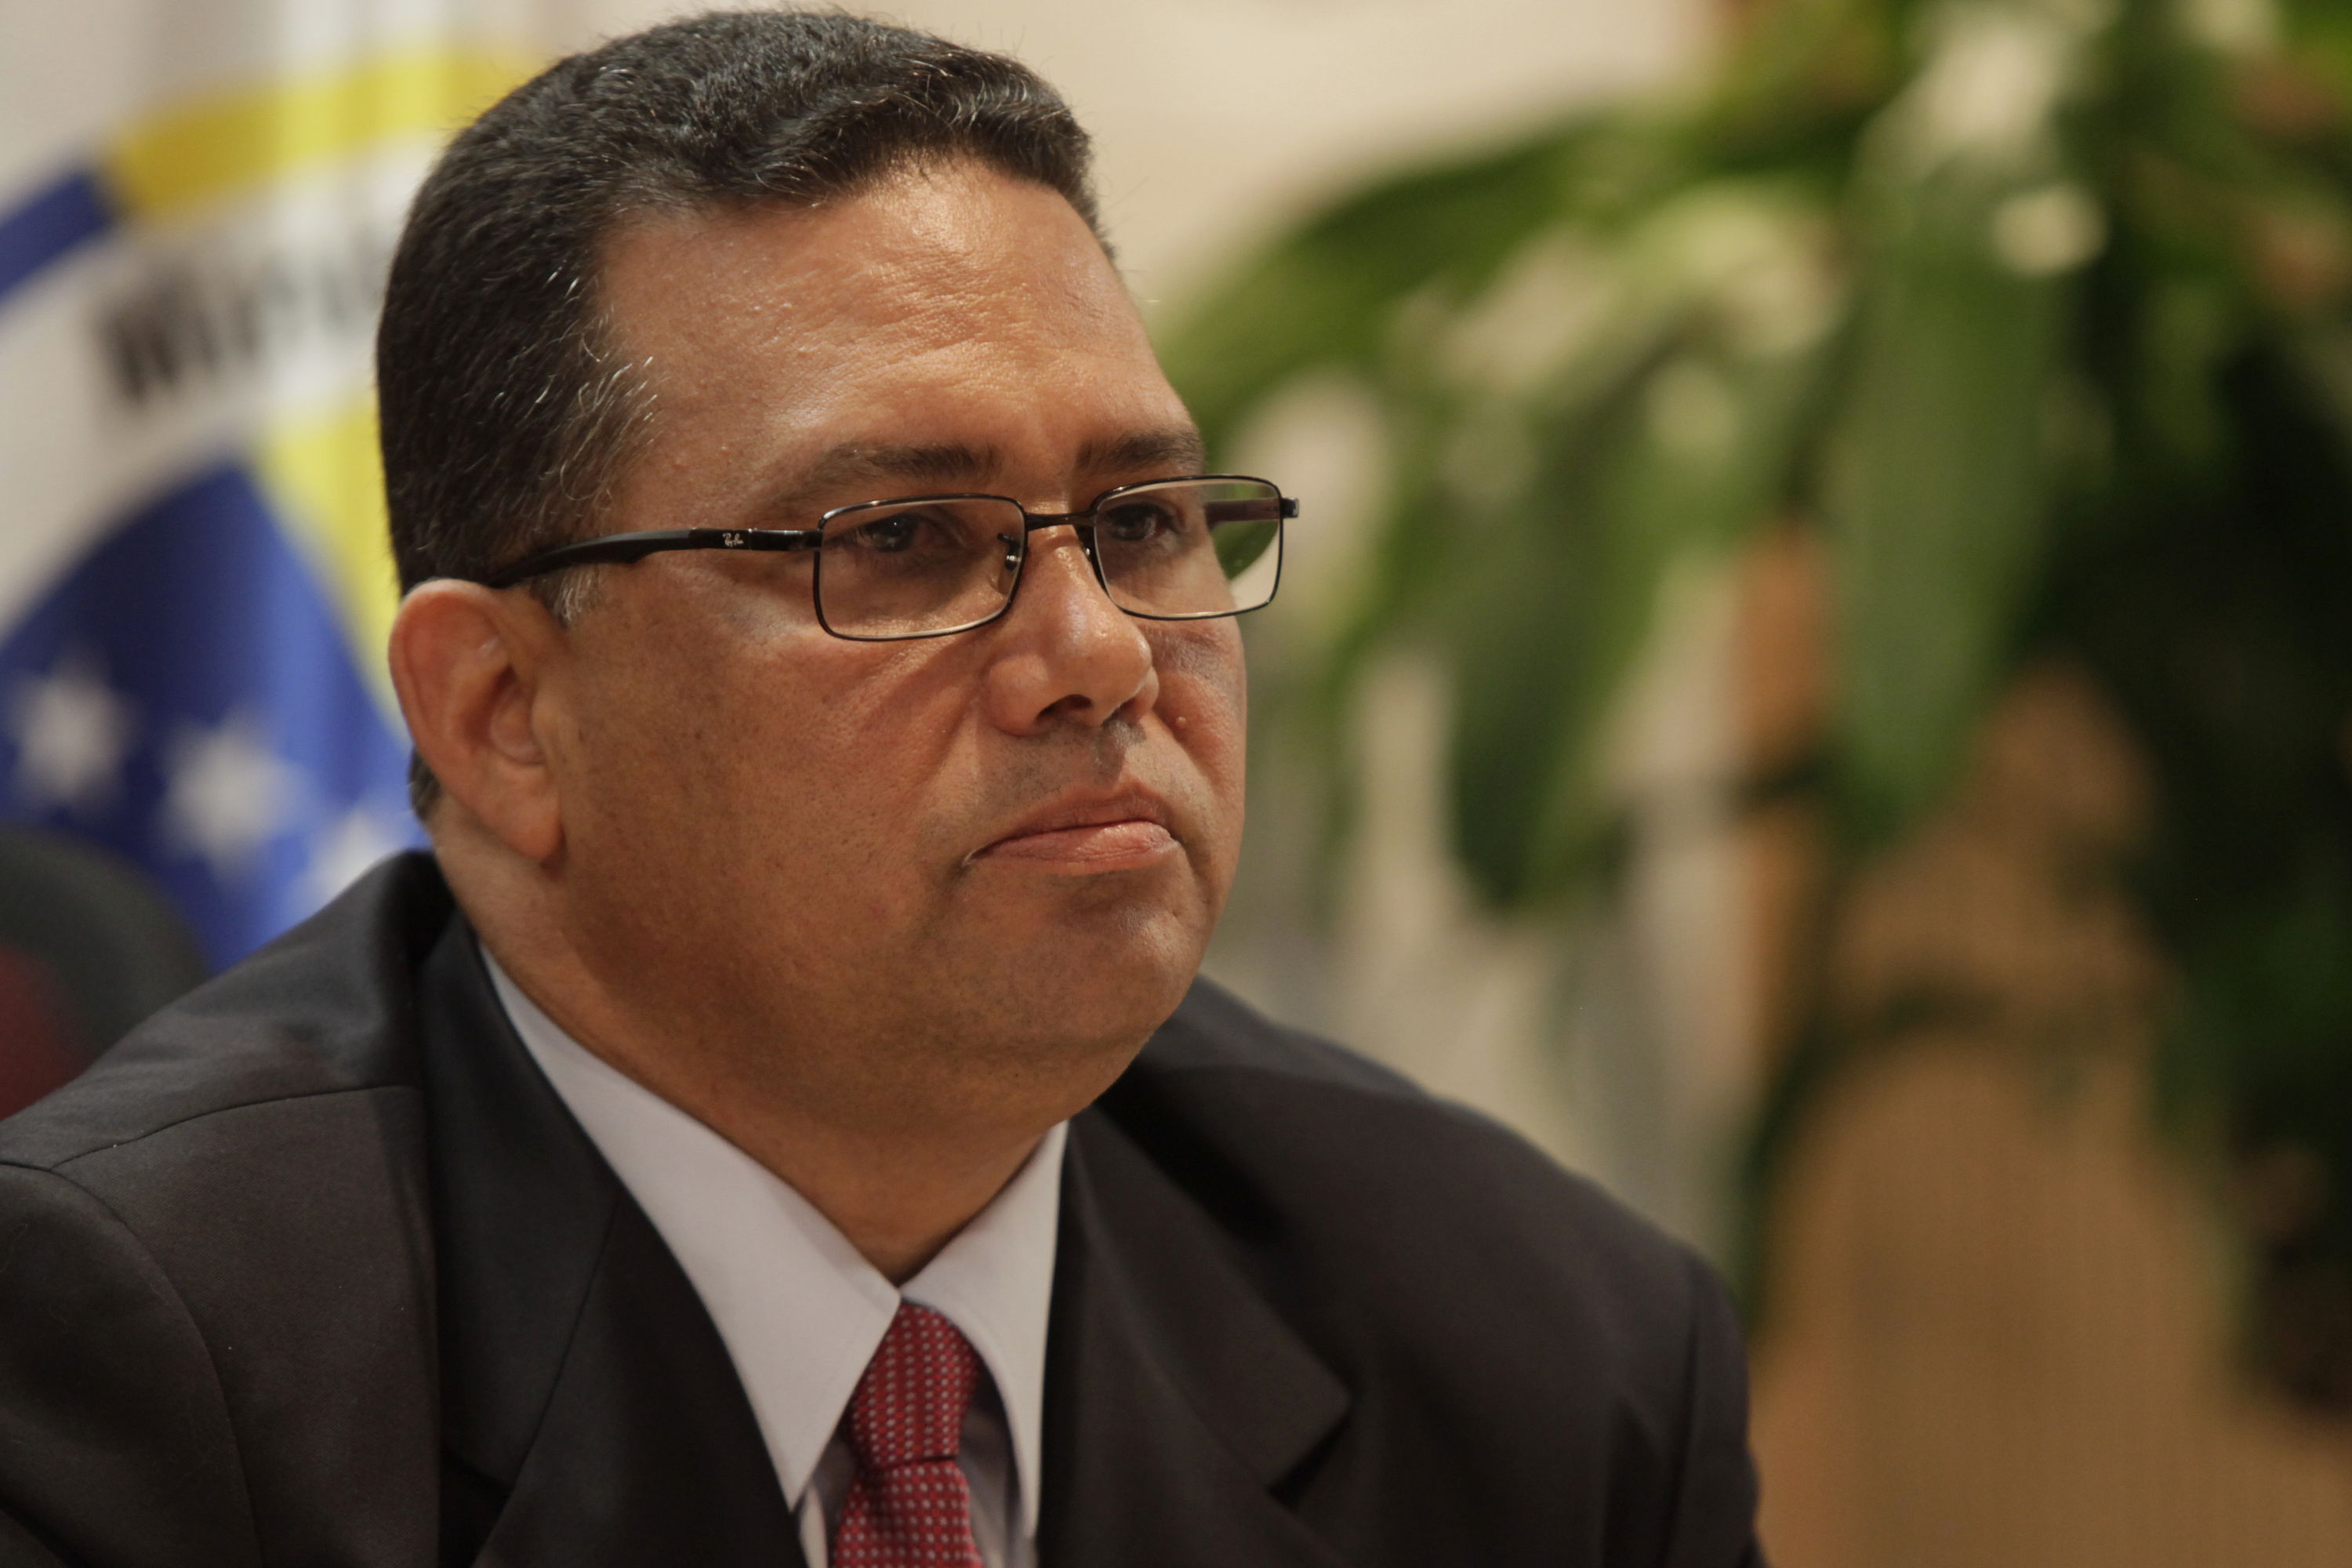 Nombran a González López como Consejero de Seguridad e Inteligencia de la Presidencia de la República